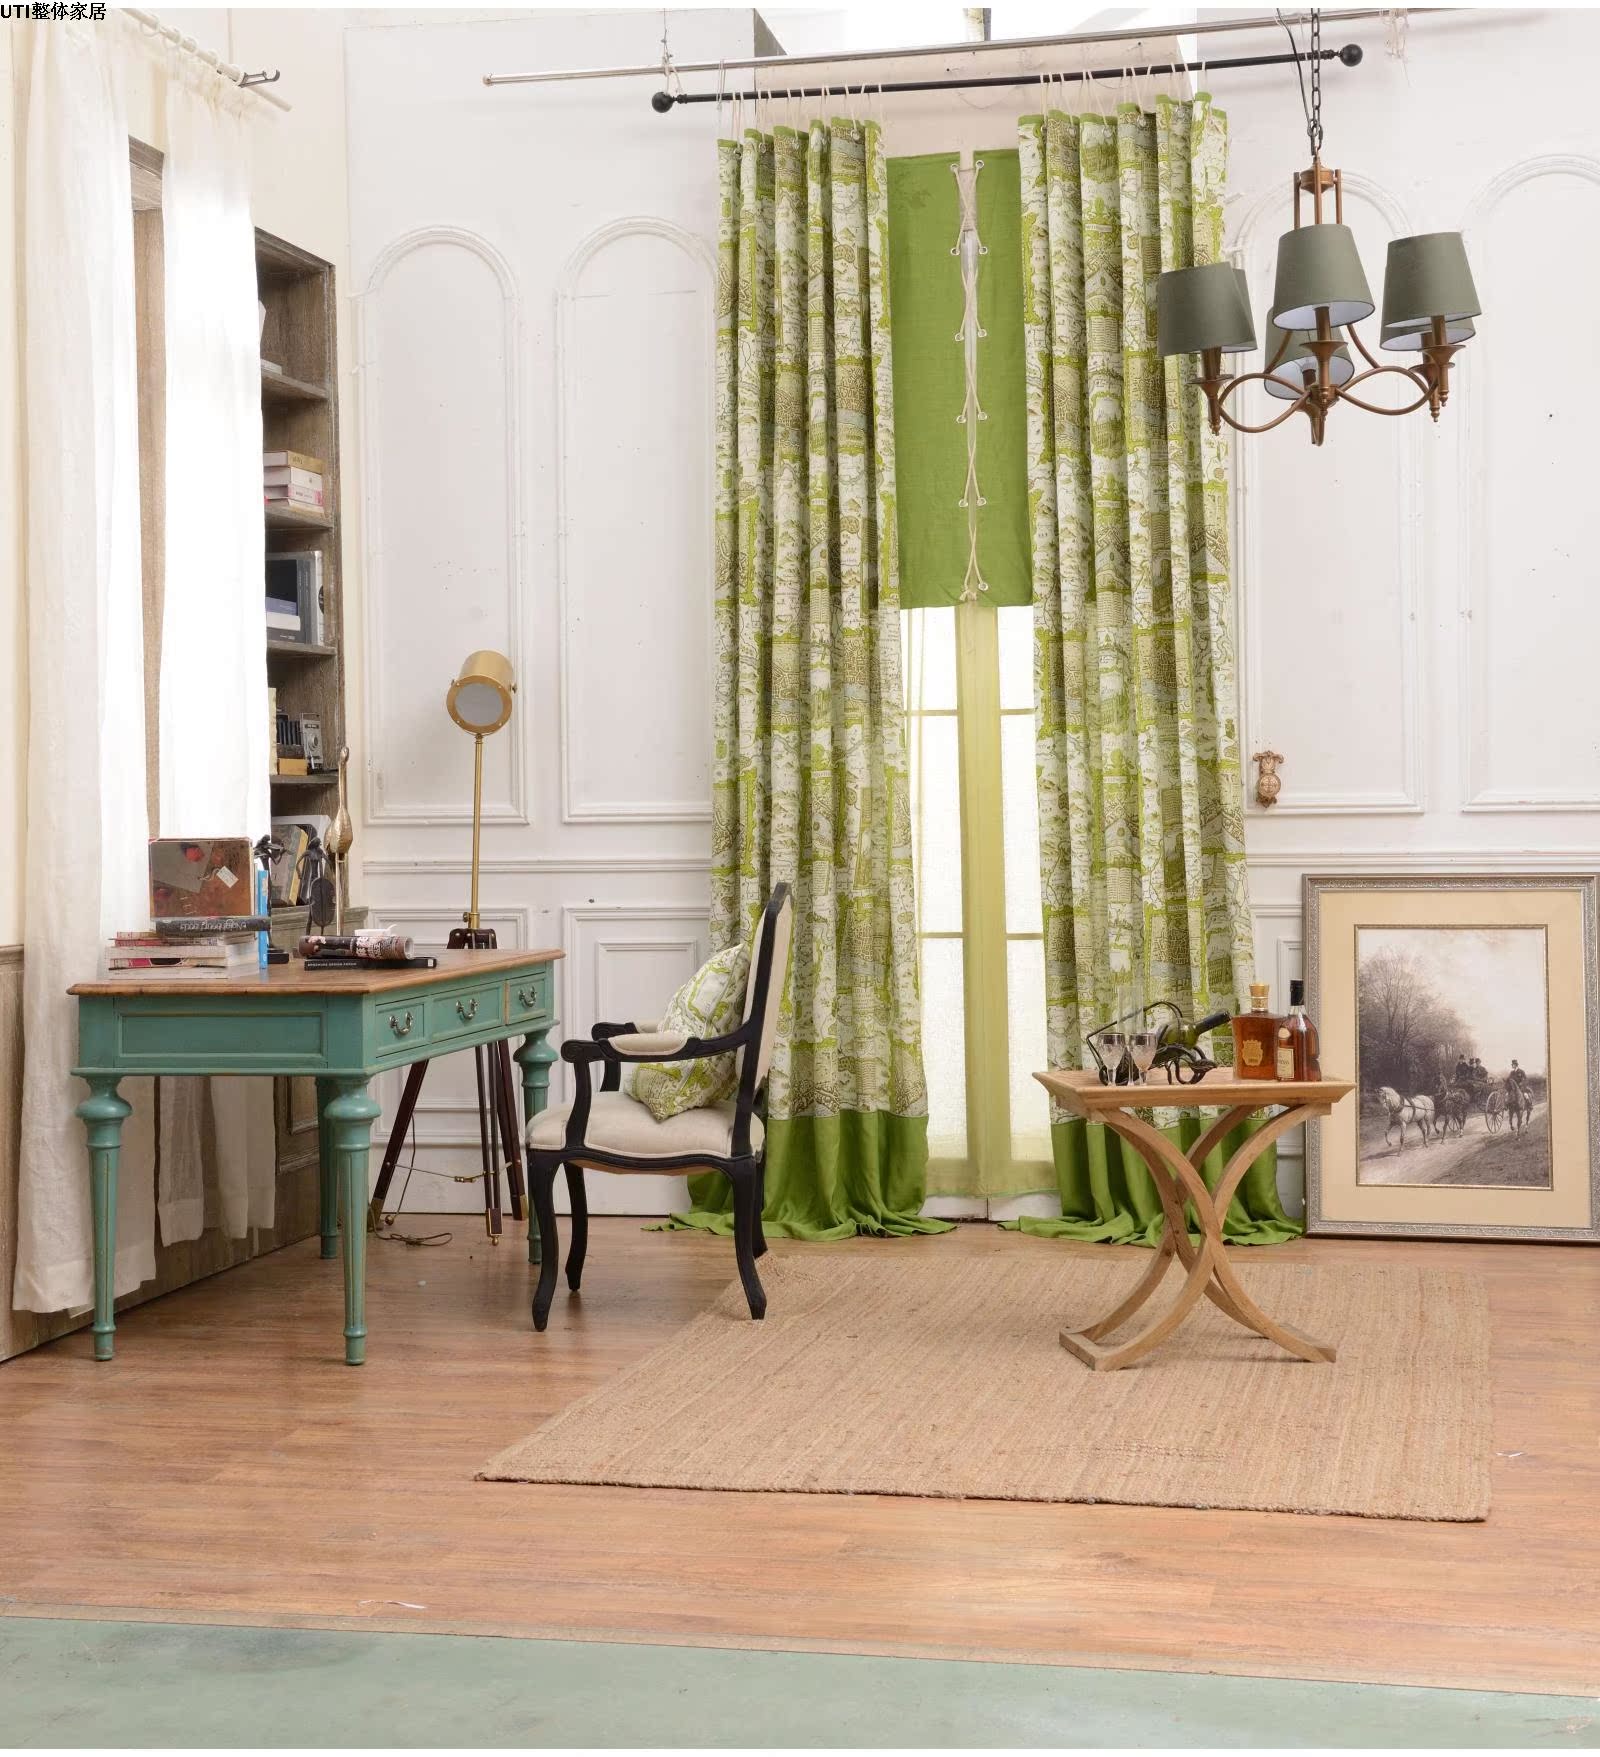 现代风格四居室主卧室绿色背景墙窗台窗帘组合衣柜装修效果图 – 设计本装修效果图